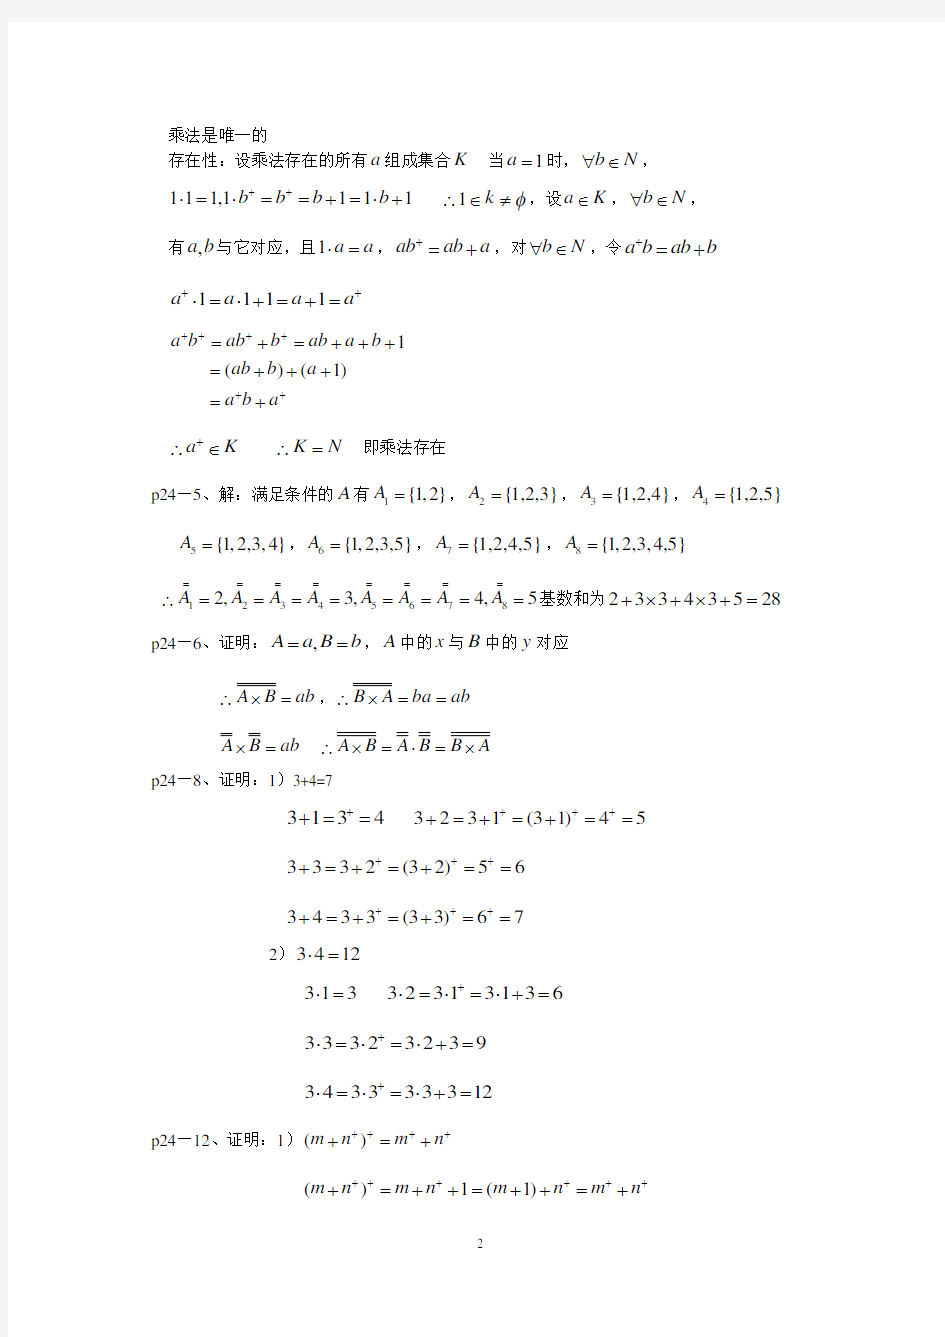 初等数学研究课后习题答案(2020年7月整理).pdf